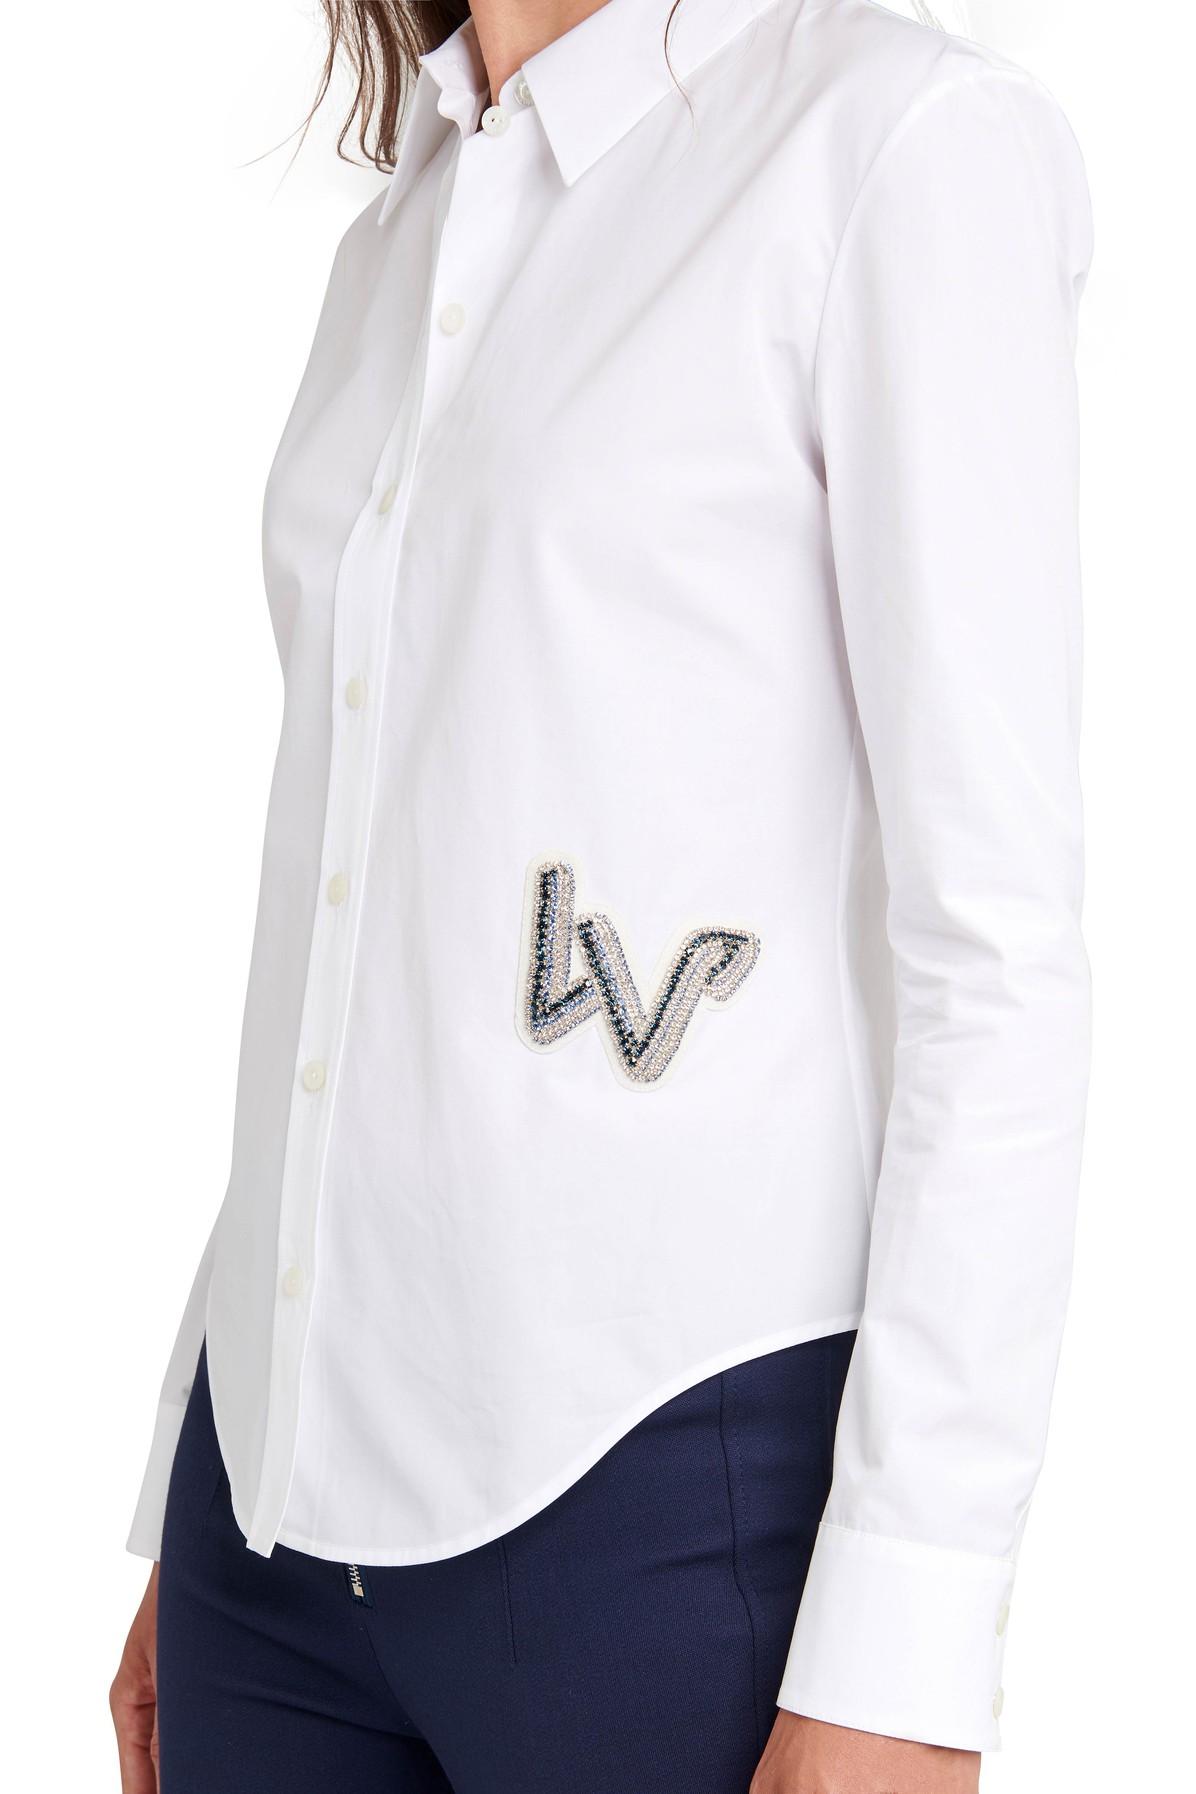 Louis Vuitton Women's Tops & Blouses for sale